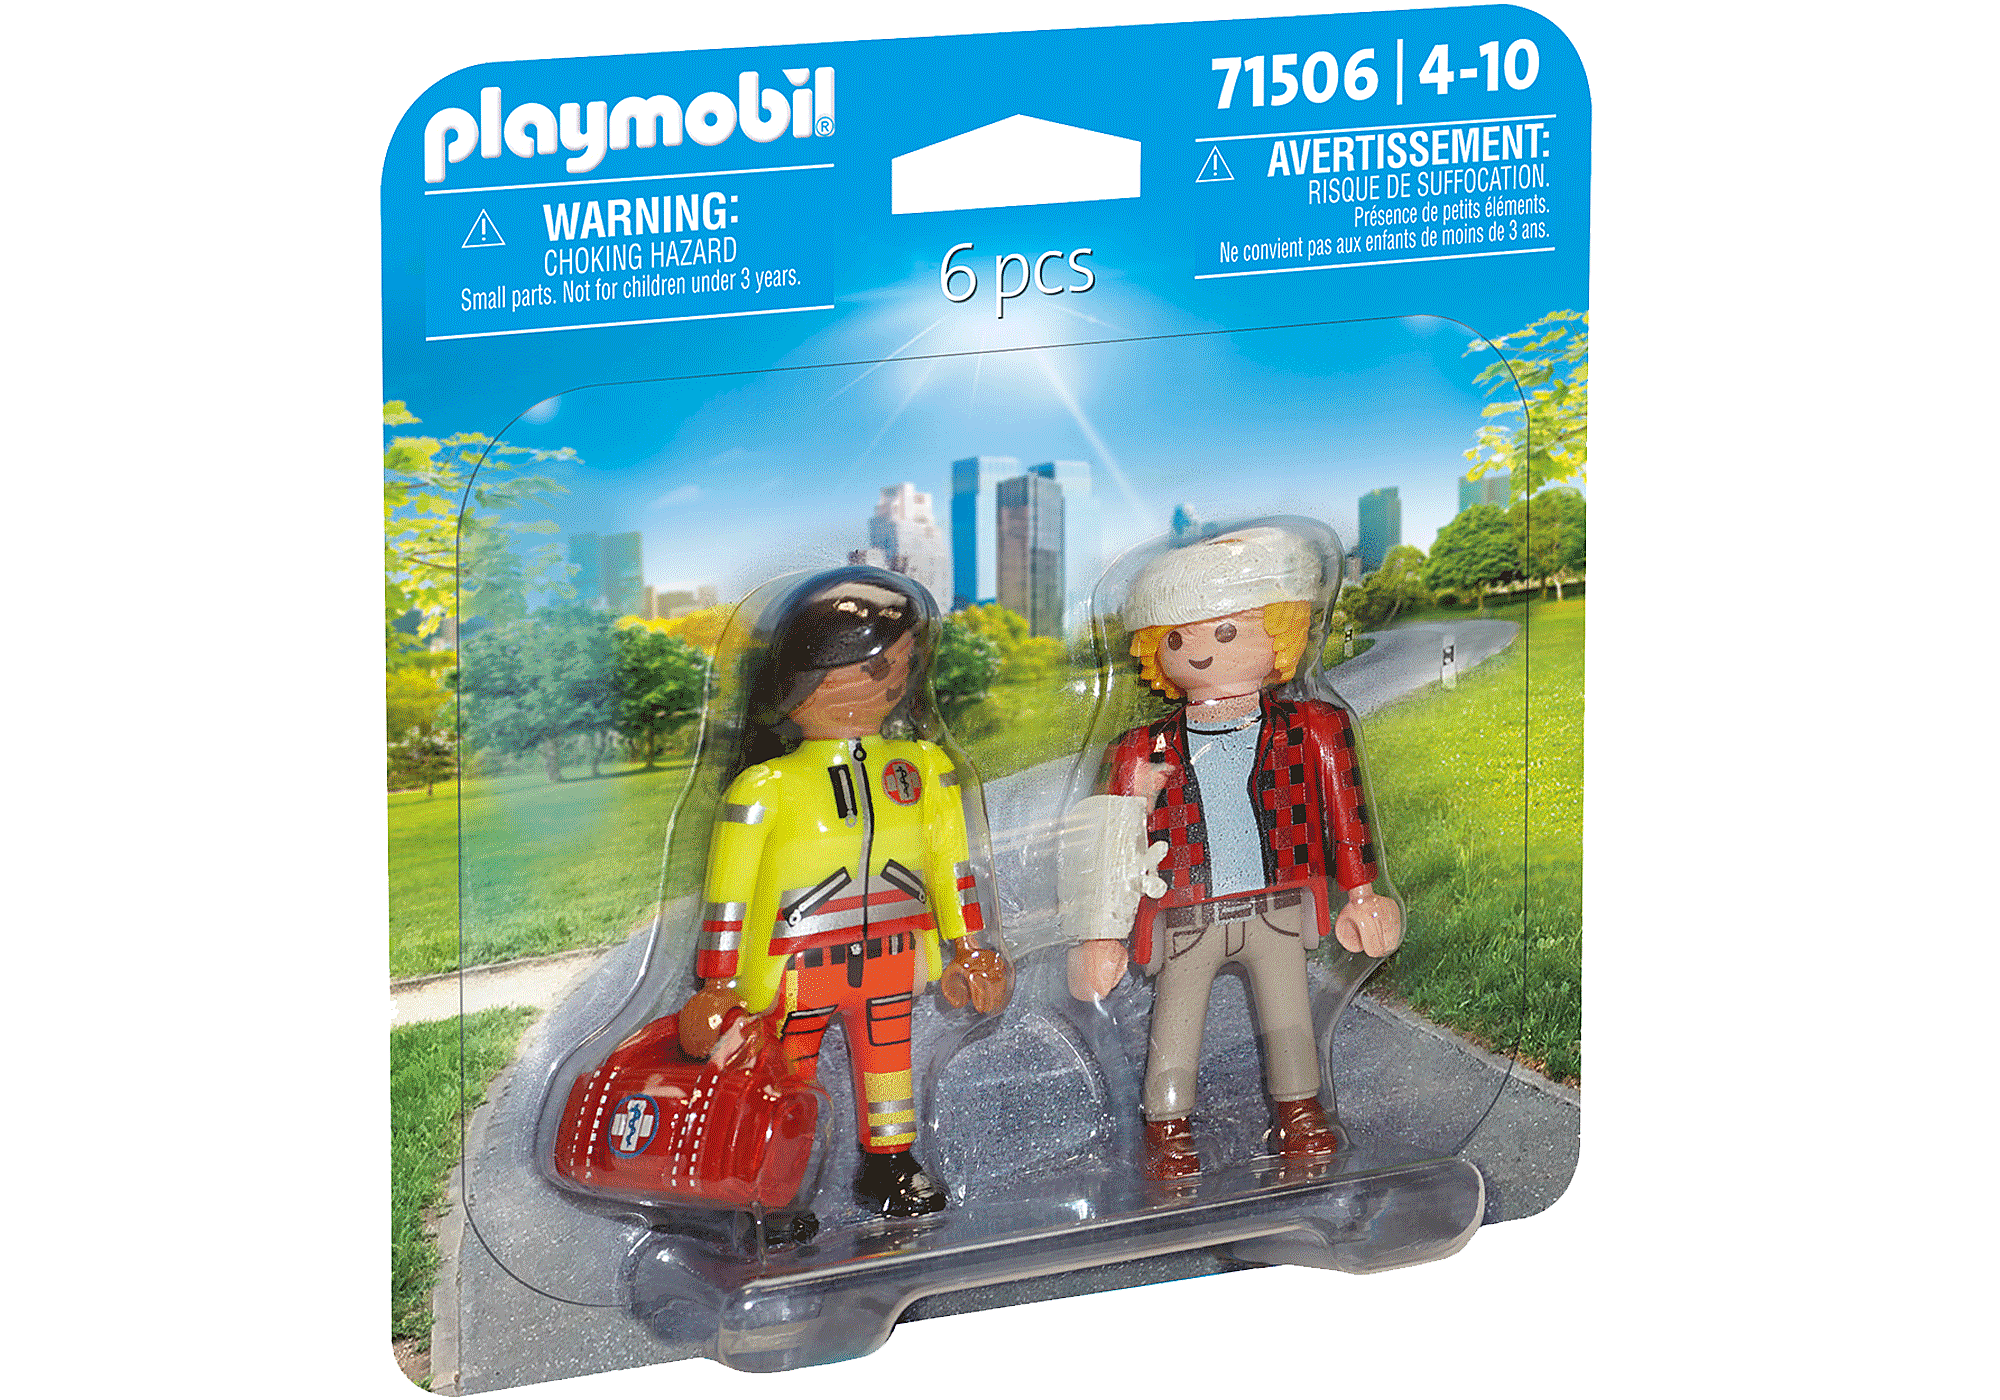 Acheter Secouriste avec blessé - Playmobil - Playmobil - Le Nuage d